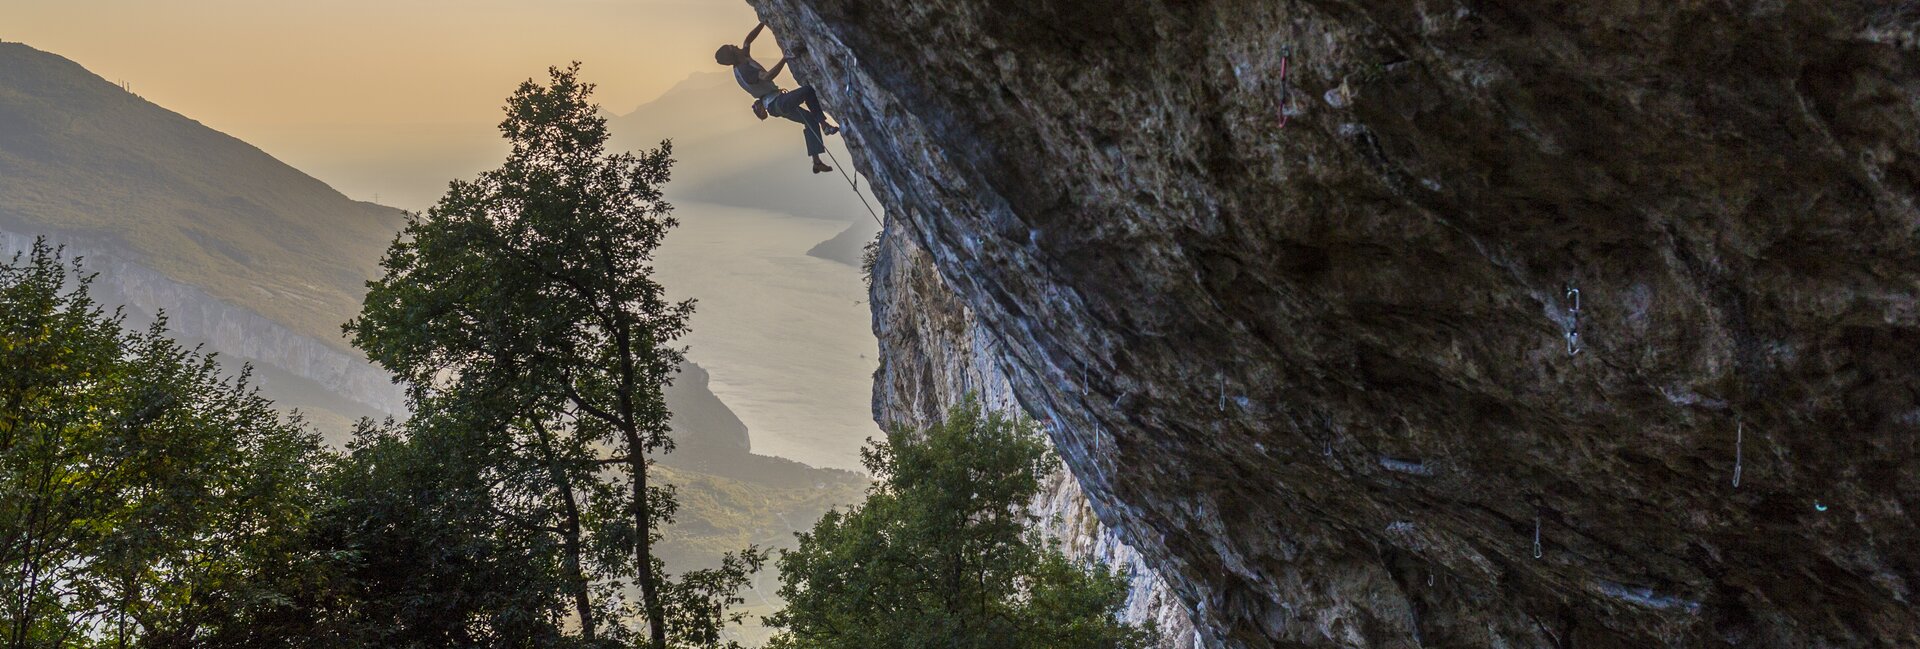 Sporturlaub Gardasee, Klettern